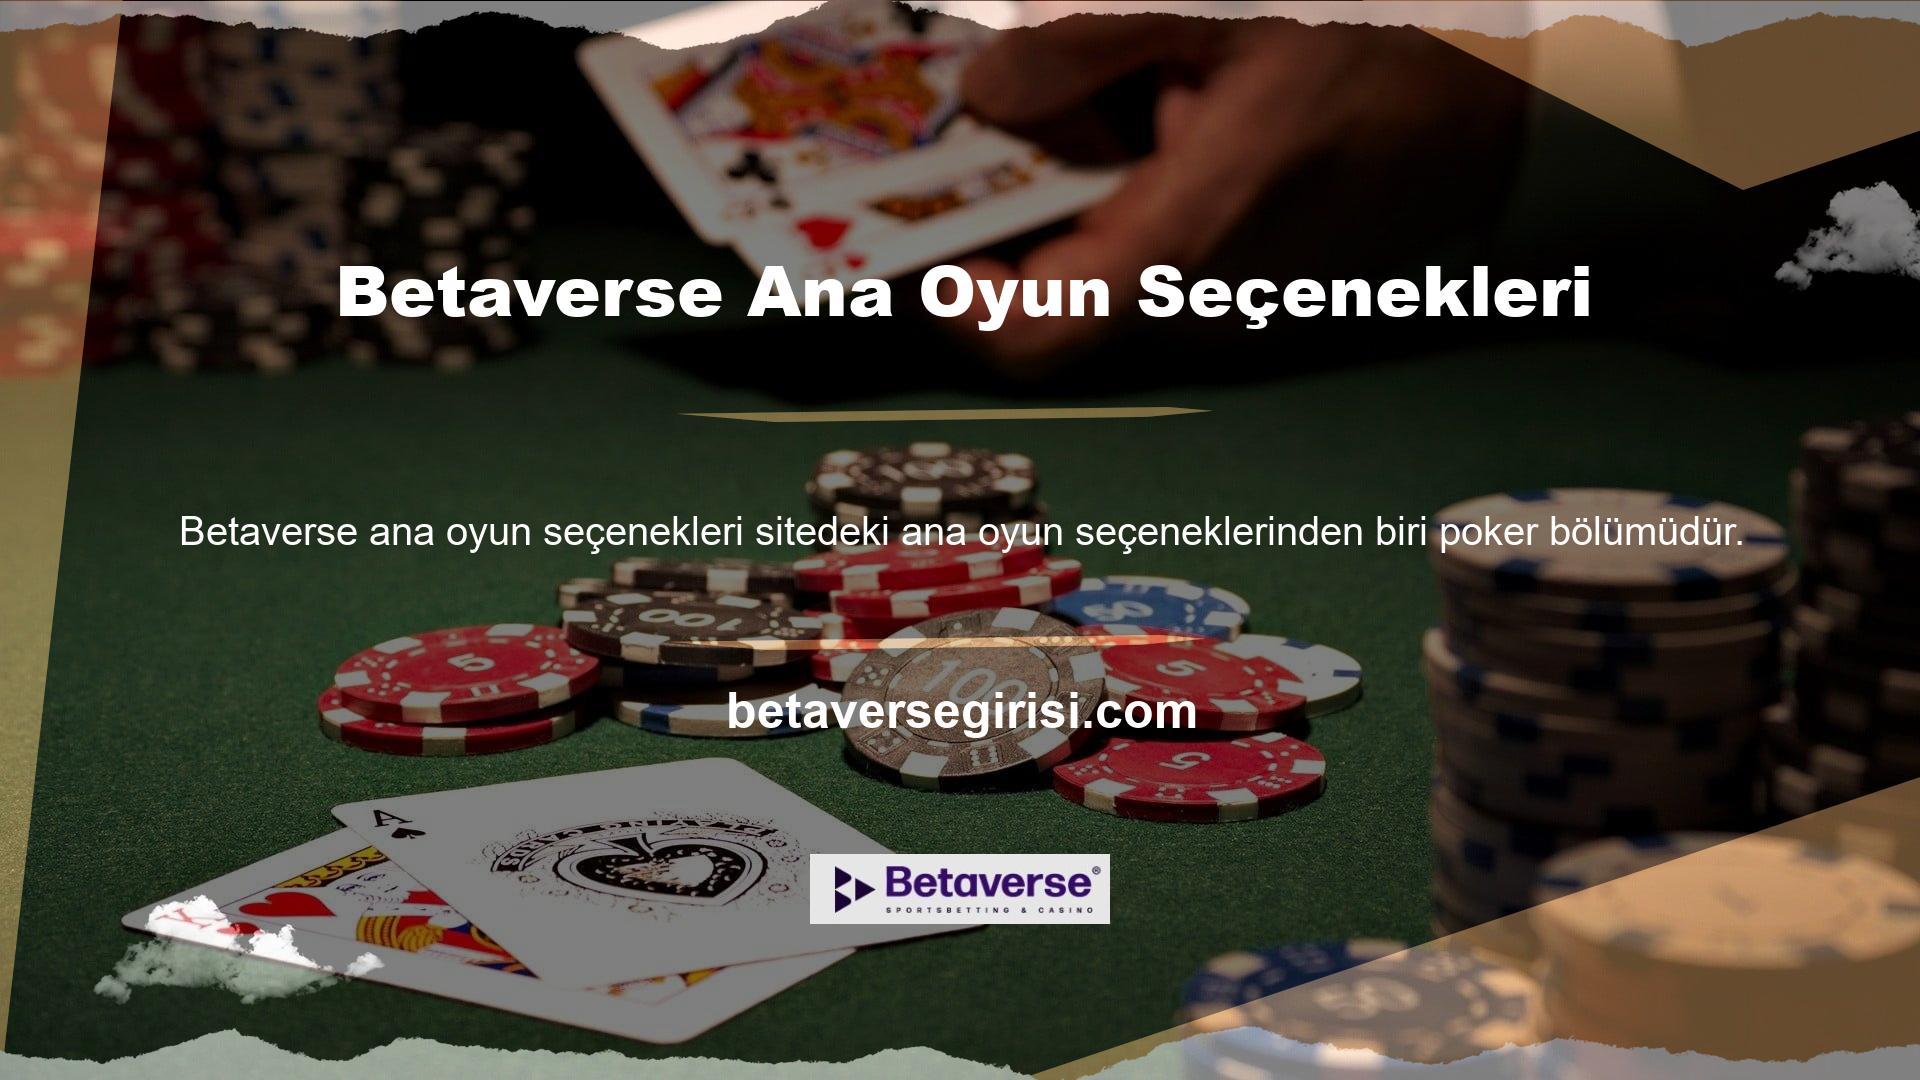 Betaverse aynı zamanda poker avantajları da sunan bir sitedir